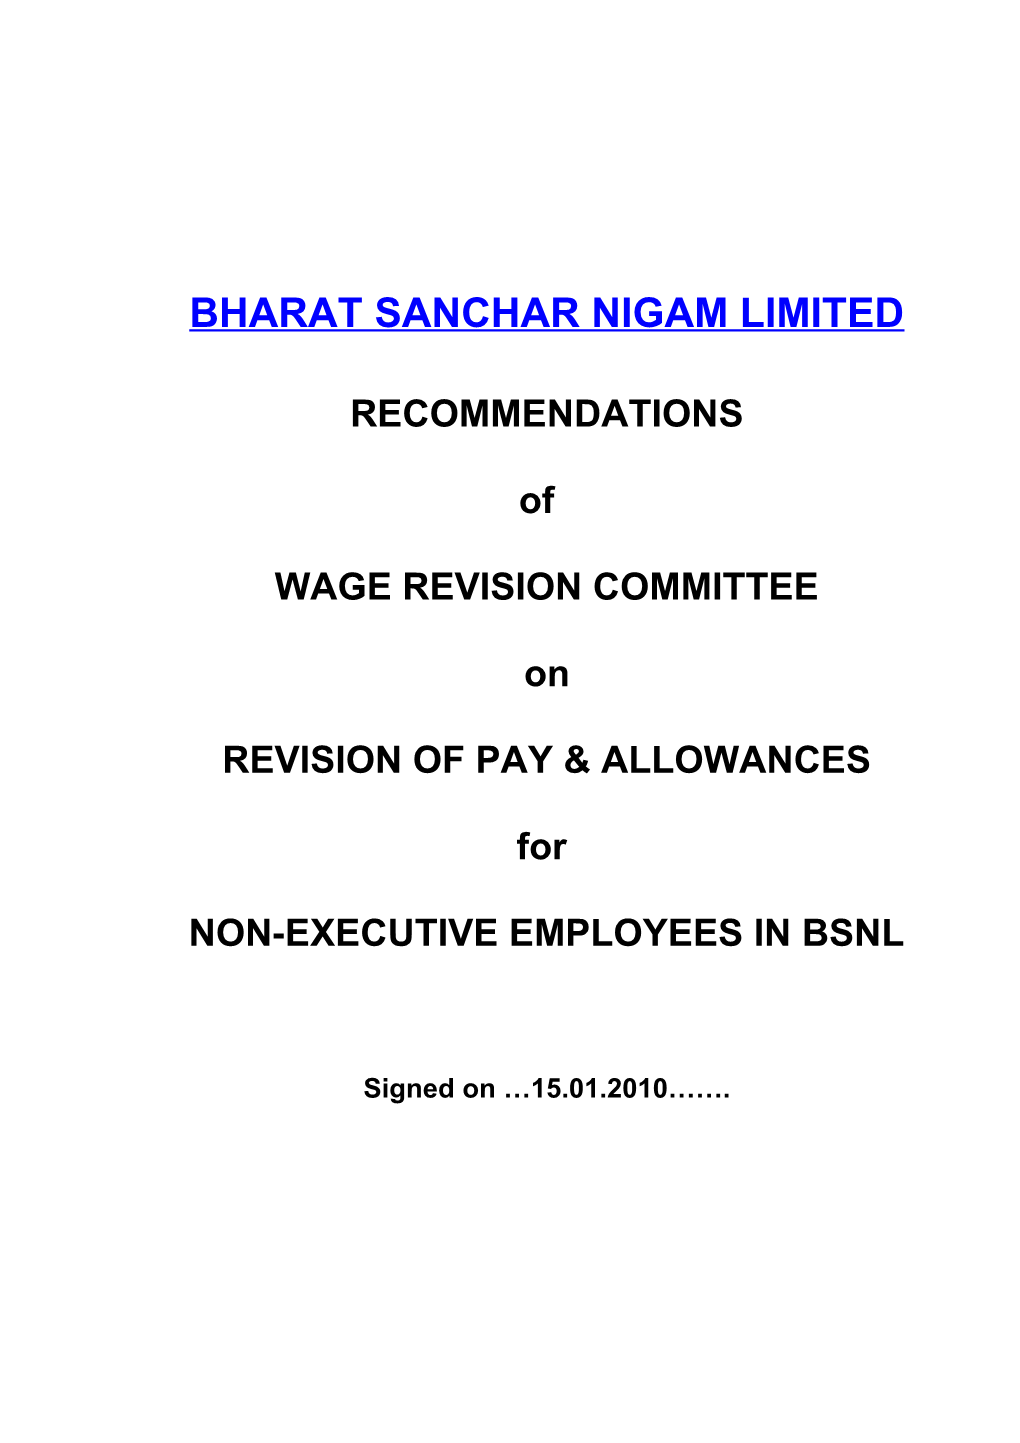 Videsh Sanchar Nigam Ltd